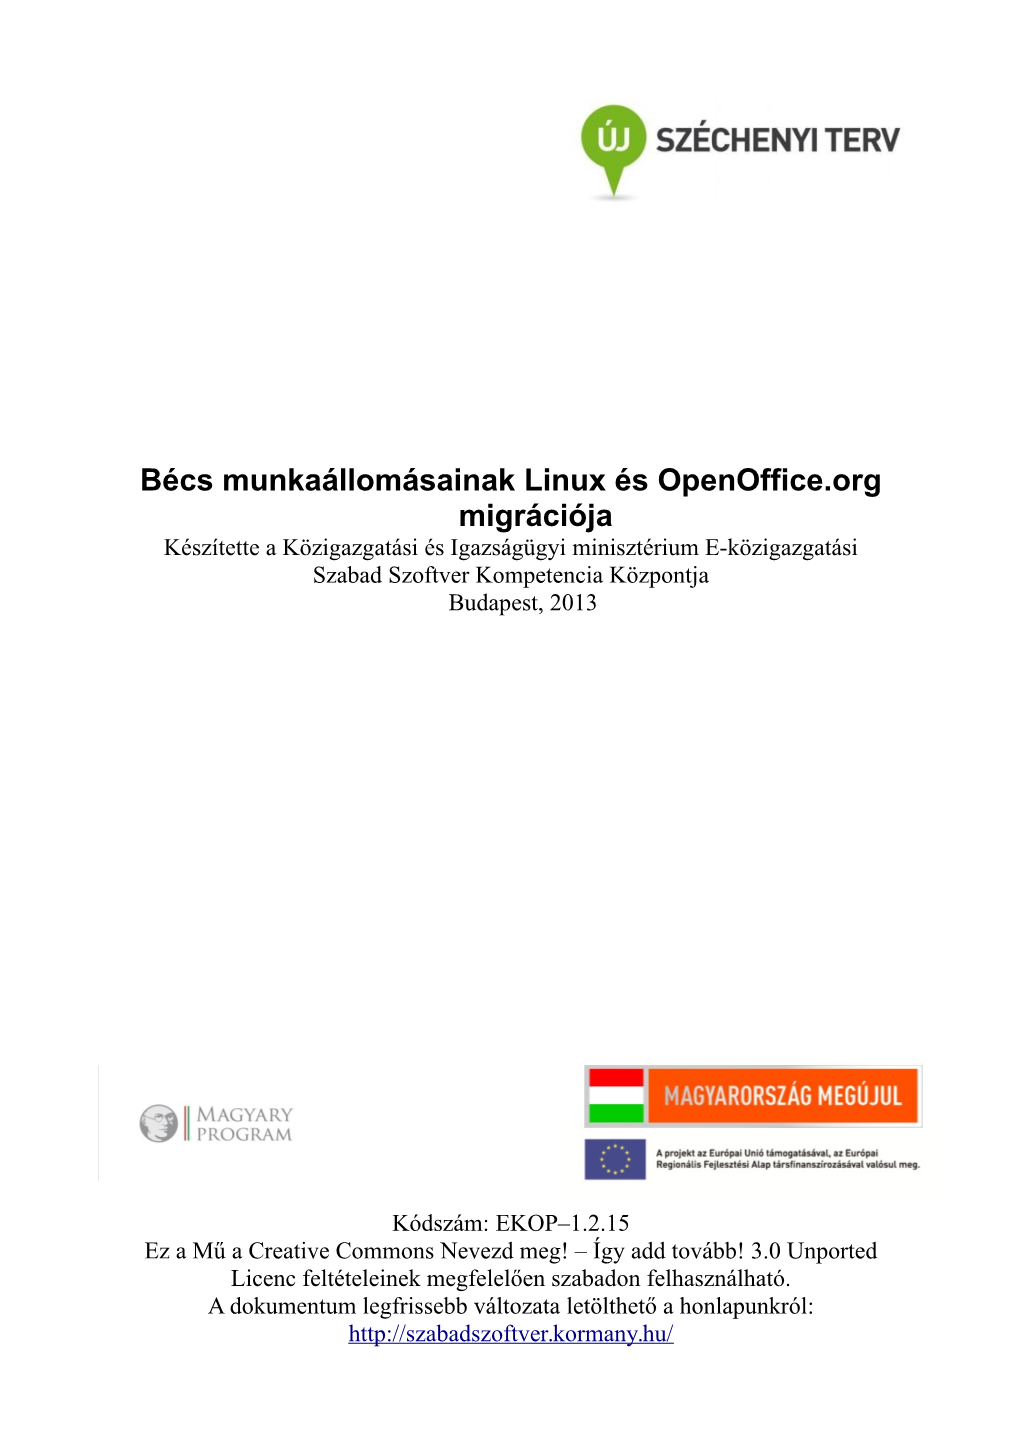 Bécs Munkaállomásainak Linux És Openoffice.Org Migrációja